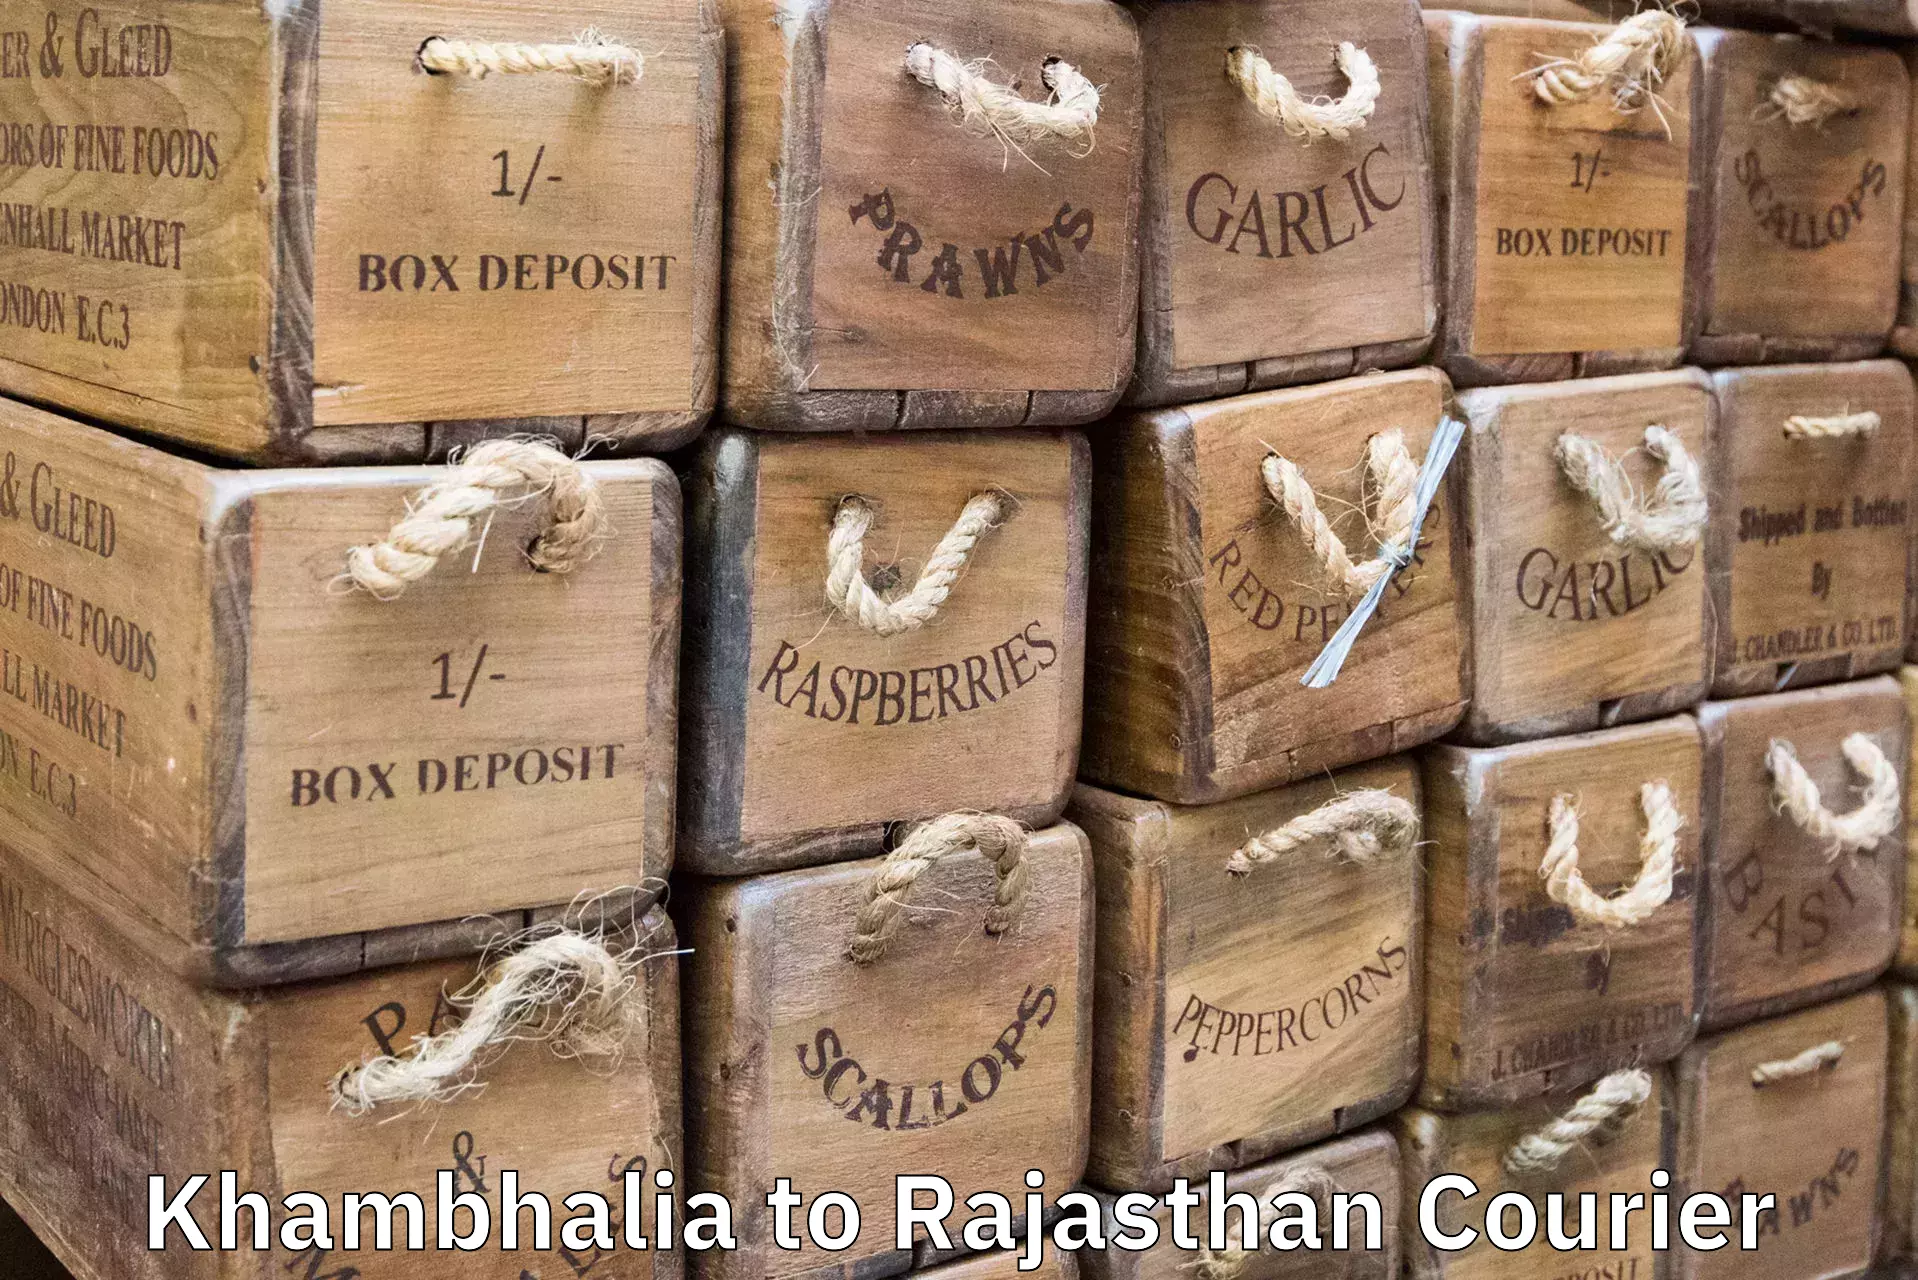 Luggage transport company Khambhalia to Rajasthan